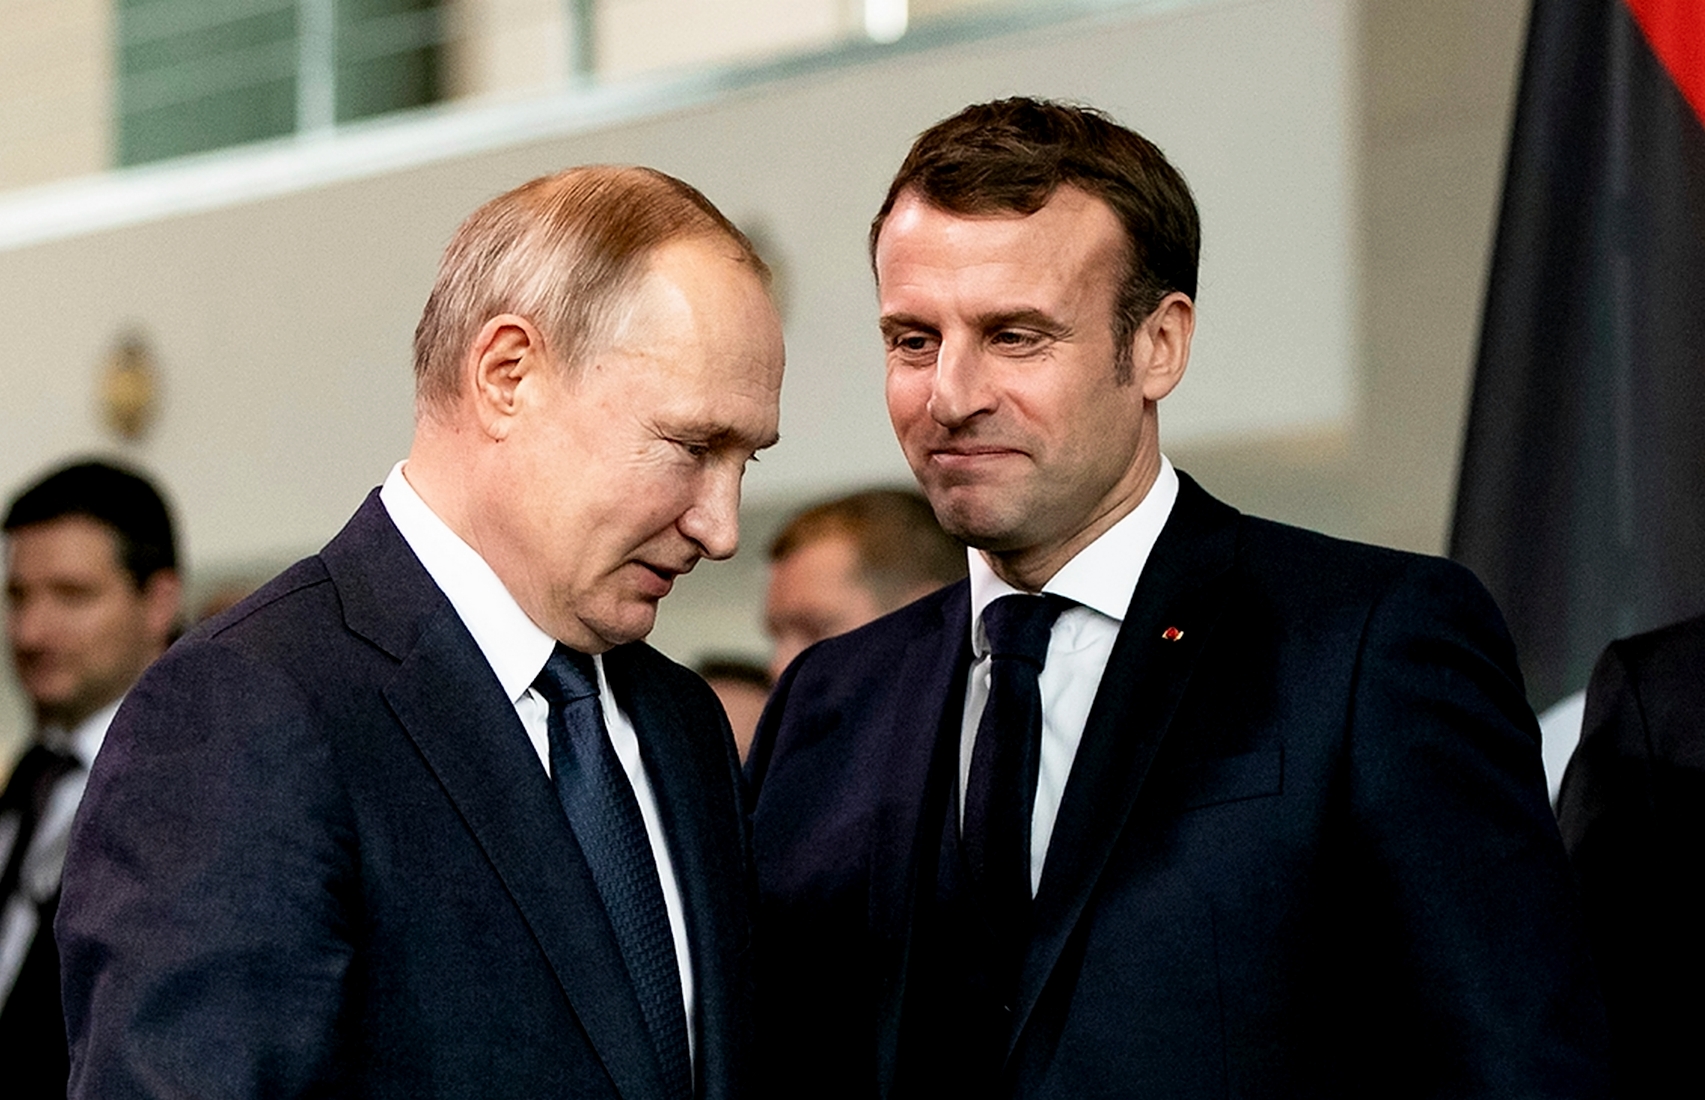 Франция начала расследование утечки разговора Путина и Макрона